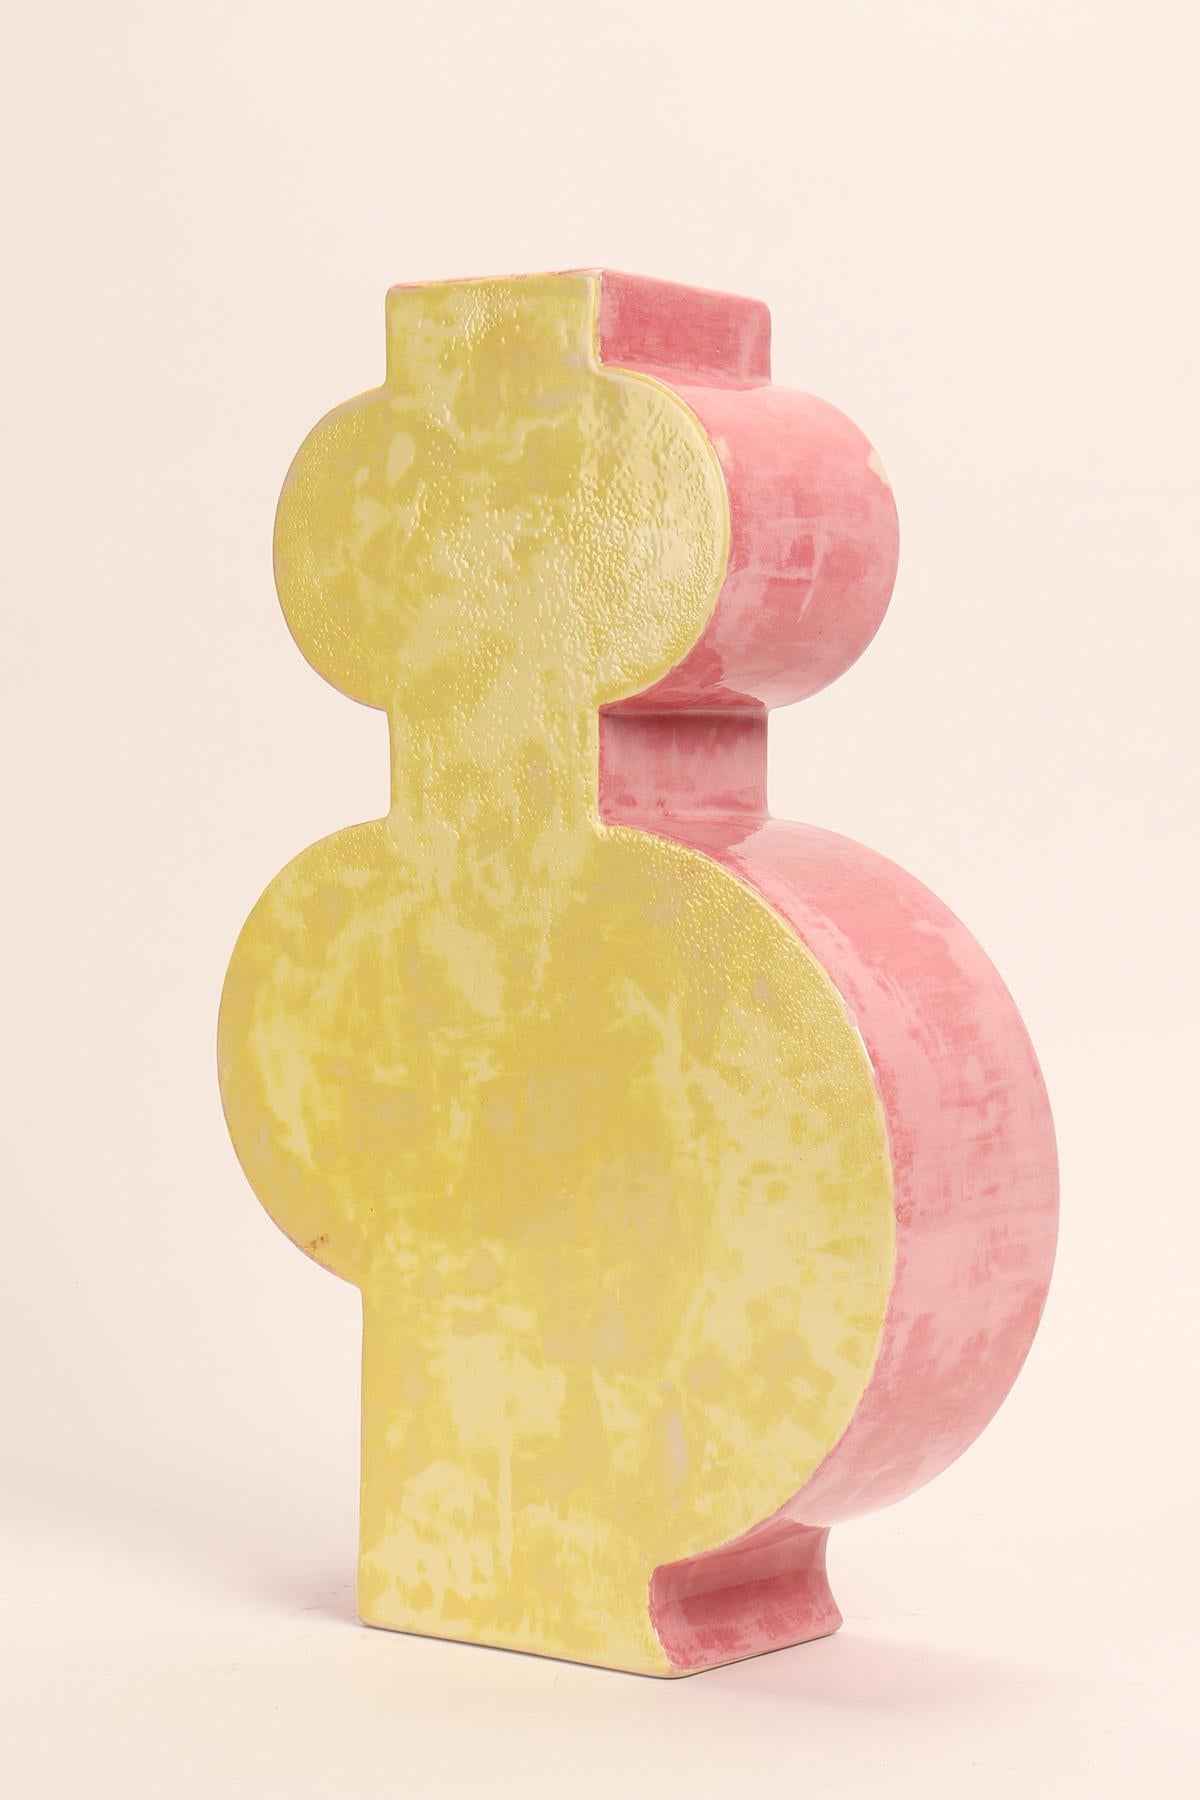 Bemalte Keramik-Vase Memphis Milano von Luciano Florio Paccagnella, rosa und gelbe Farbe.
Er war ein wichtiges Mitglied der Gruppe, als er seine Serie von einzigartigen handgefertigten Vasen schuf. Florio Paccagnella studierte Werbegrafik am Liceo